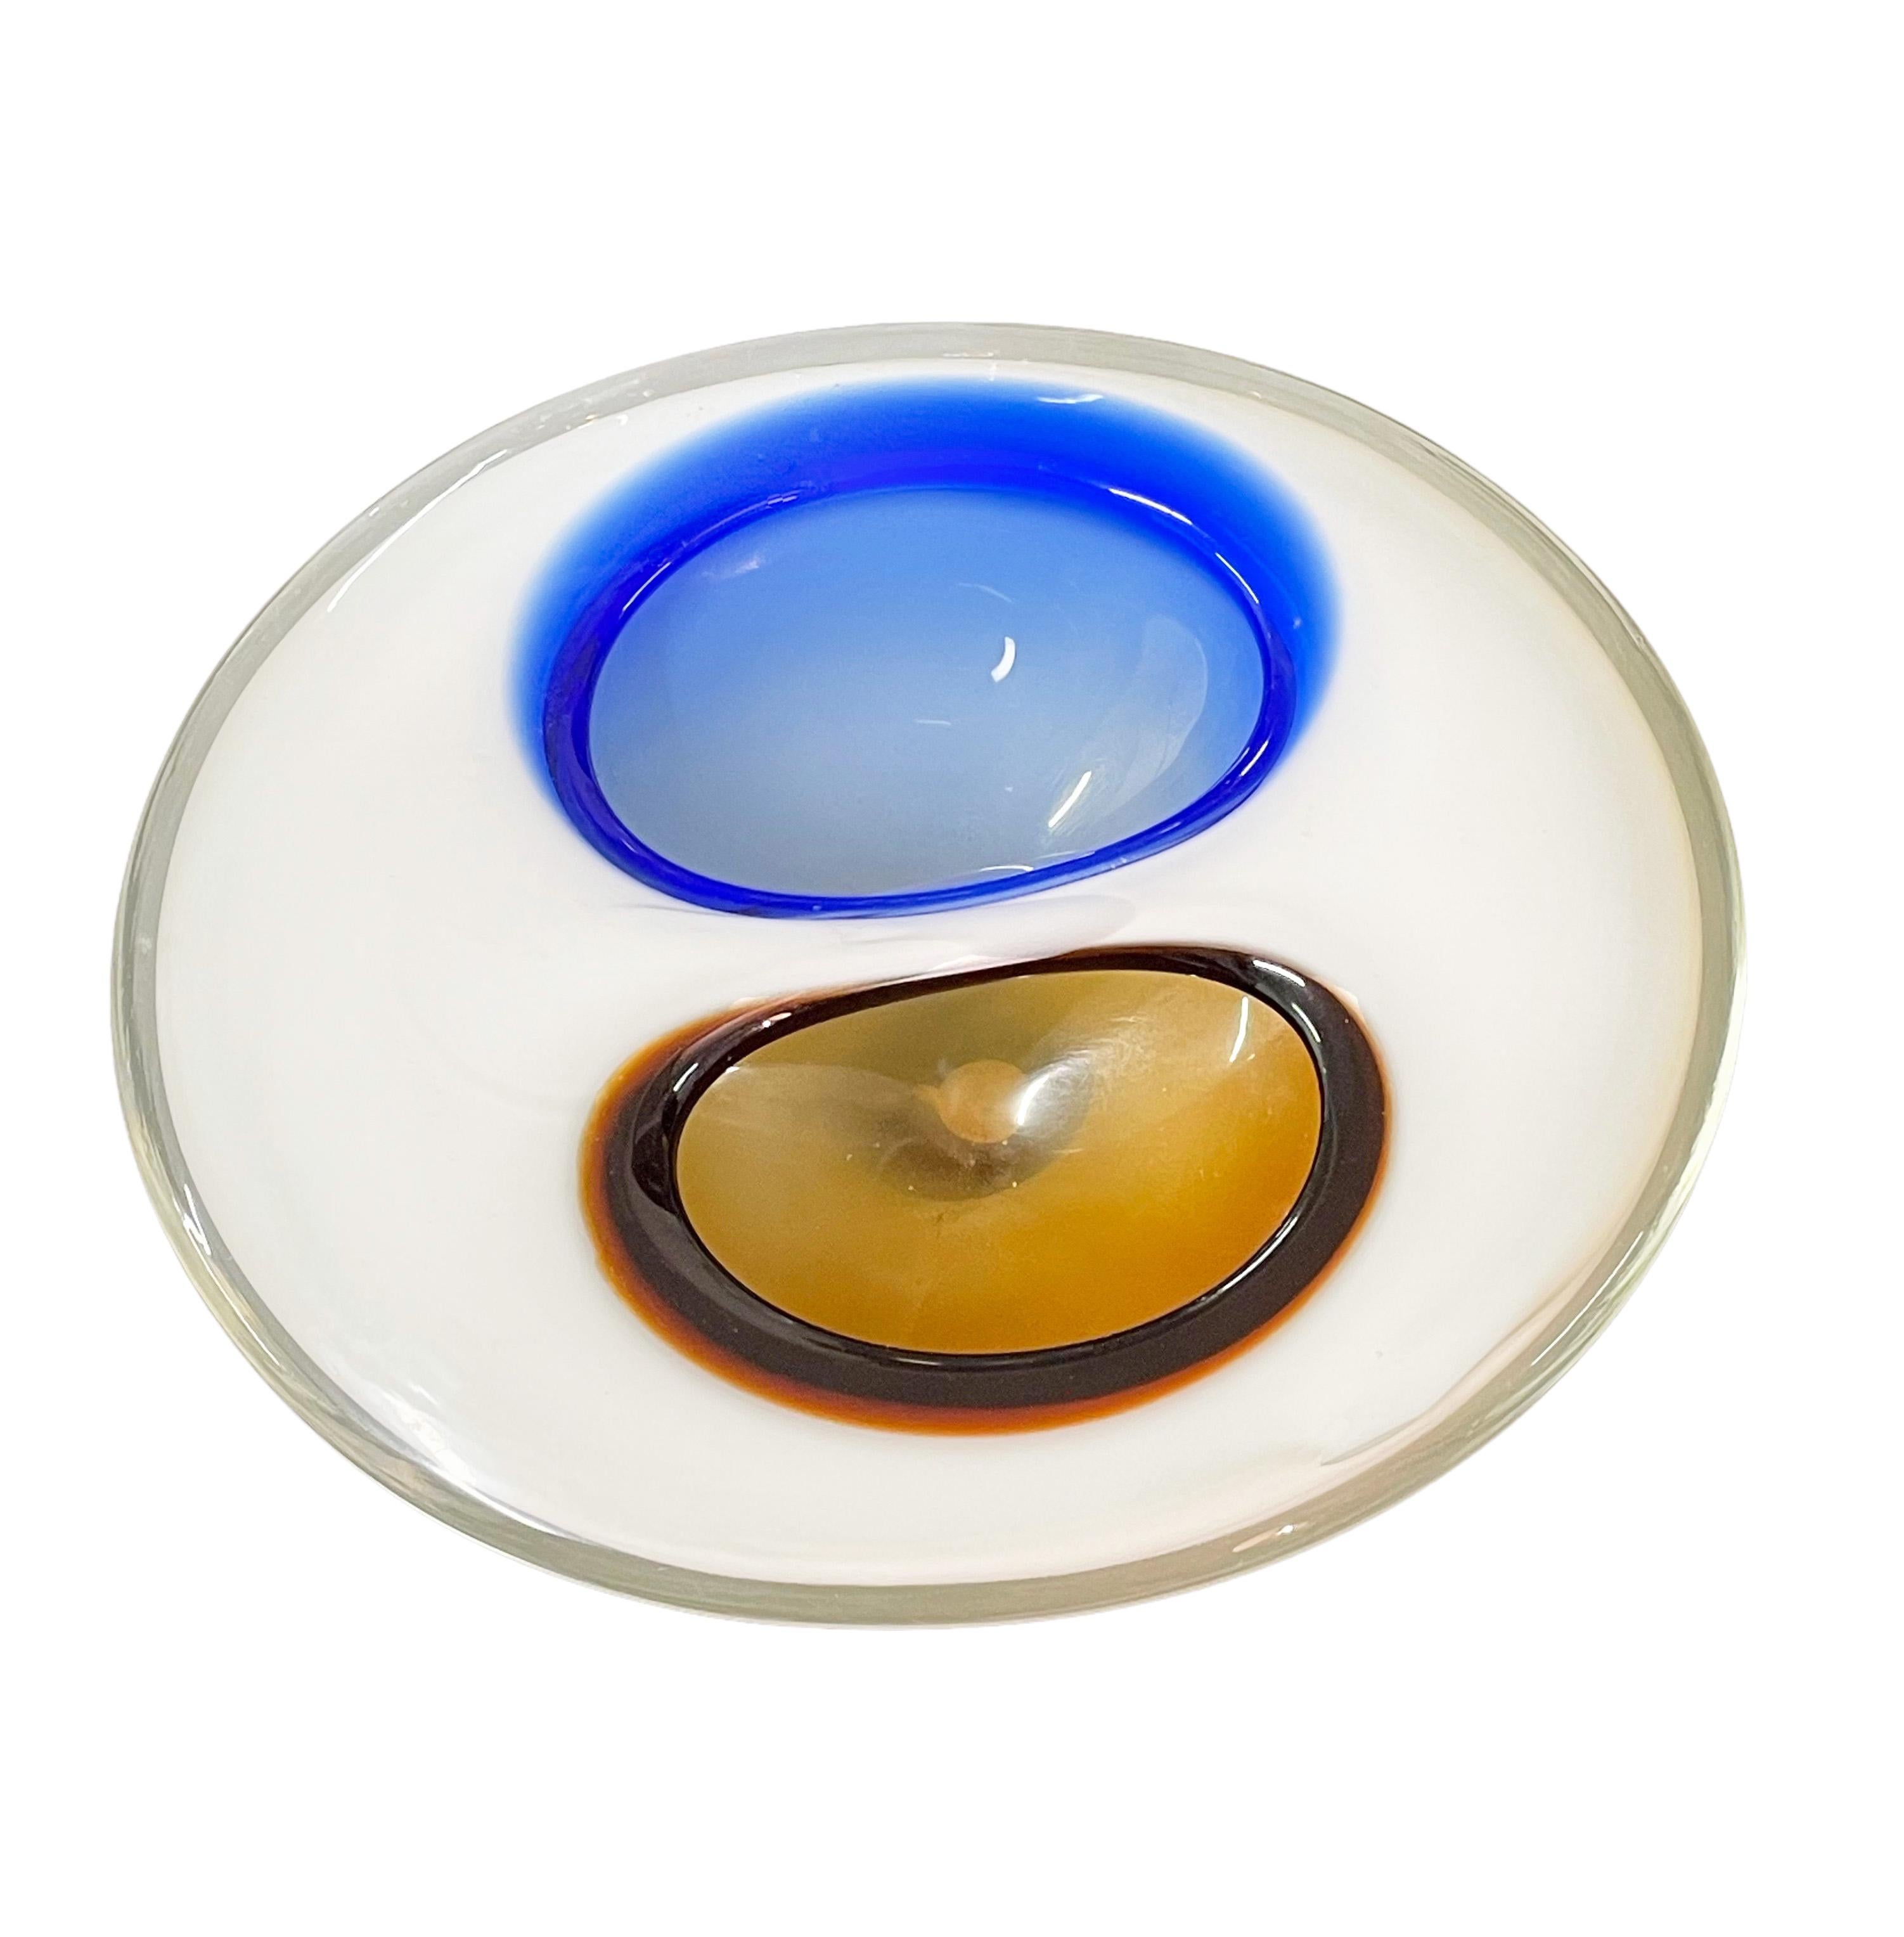 Unglaubliche Mitte des Jahrhunderts Murano Kunstglas weiß mit zwei Taschen in blau und dunkel bernsteinfarben. Dieses fantastische Stück wurde in den 1970er Jahren in Italien entworfen und wird Flavio Poli zugeschrieben.

Die Linienführung ist